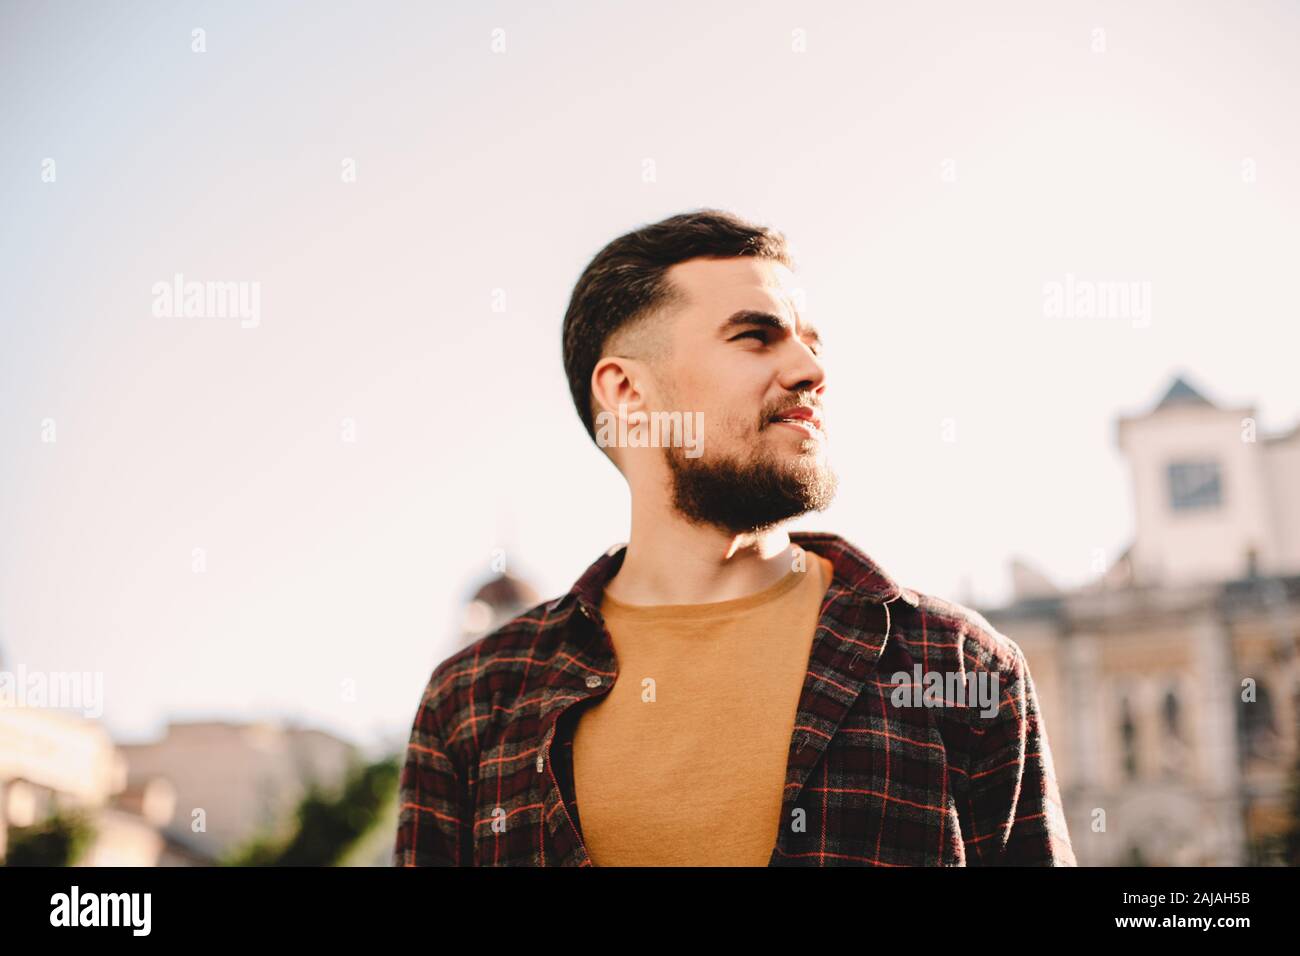 Retrato de un hombre joven y confiado en hipster contra el cielo despejado en la ciudad Foto de stock